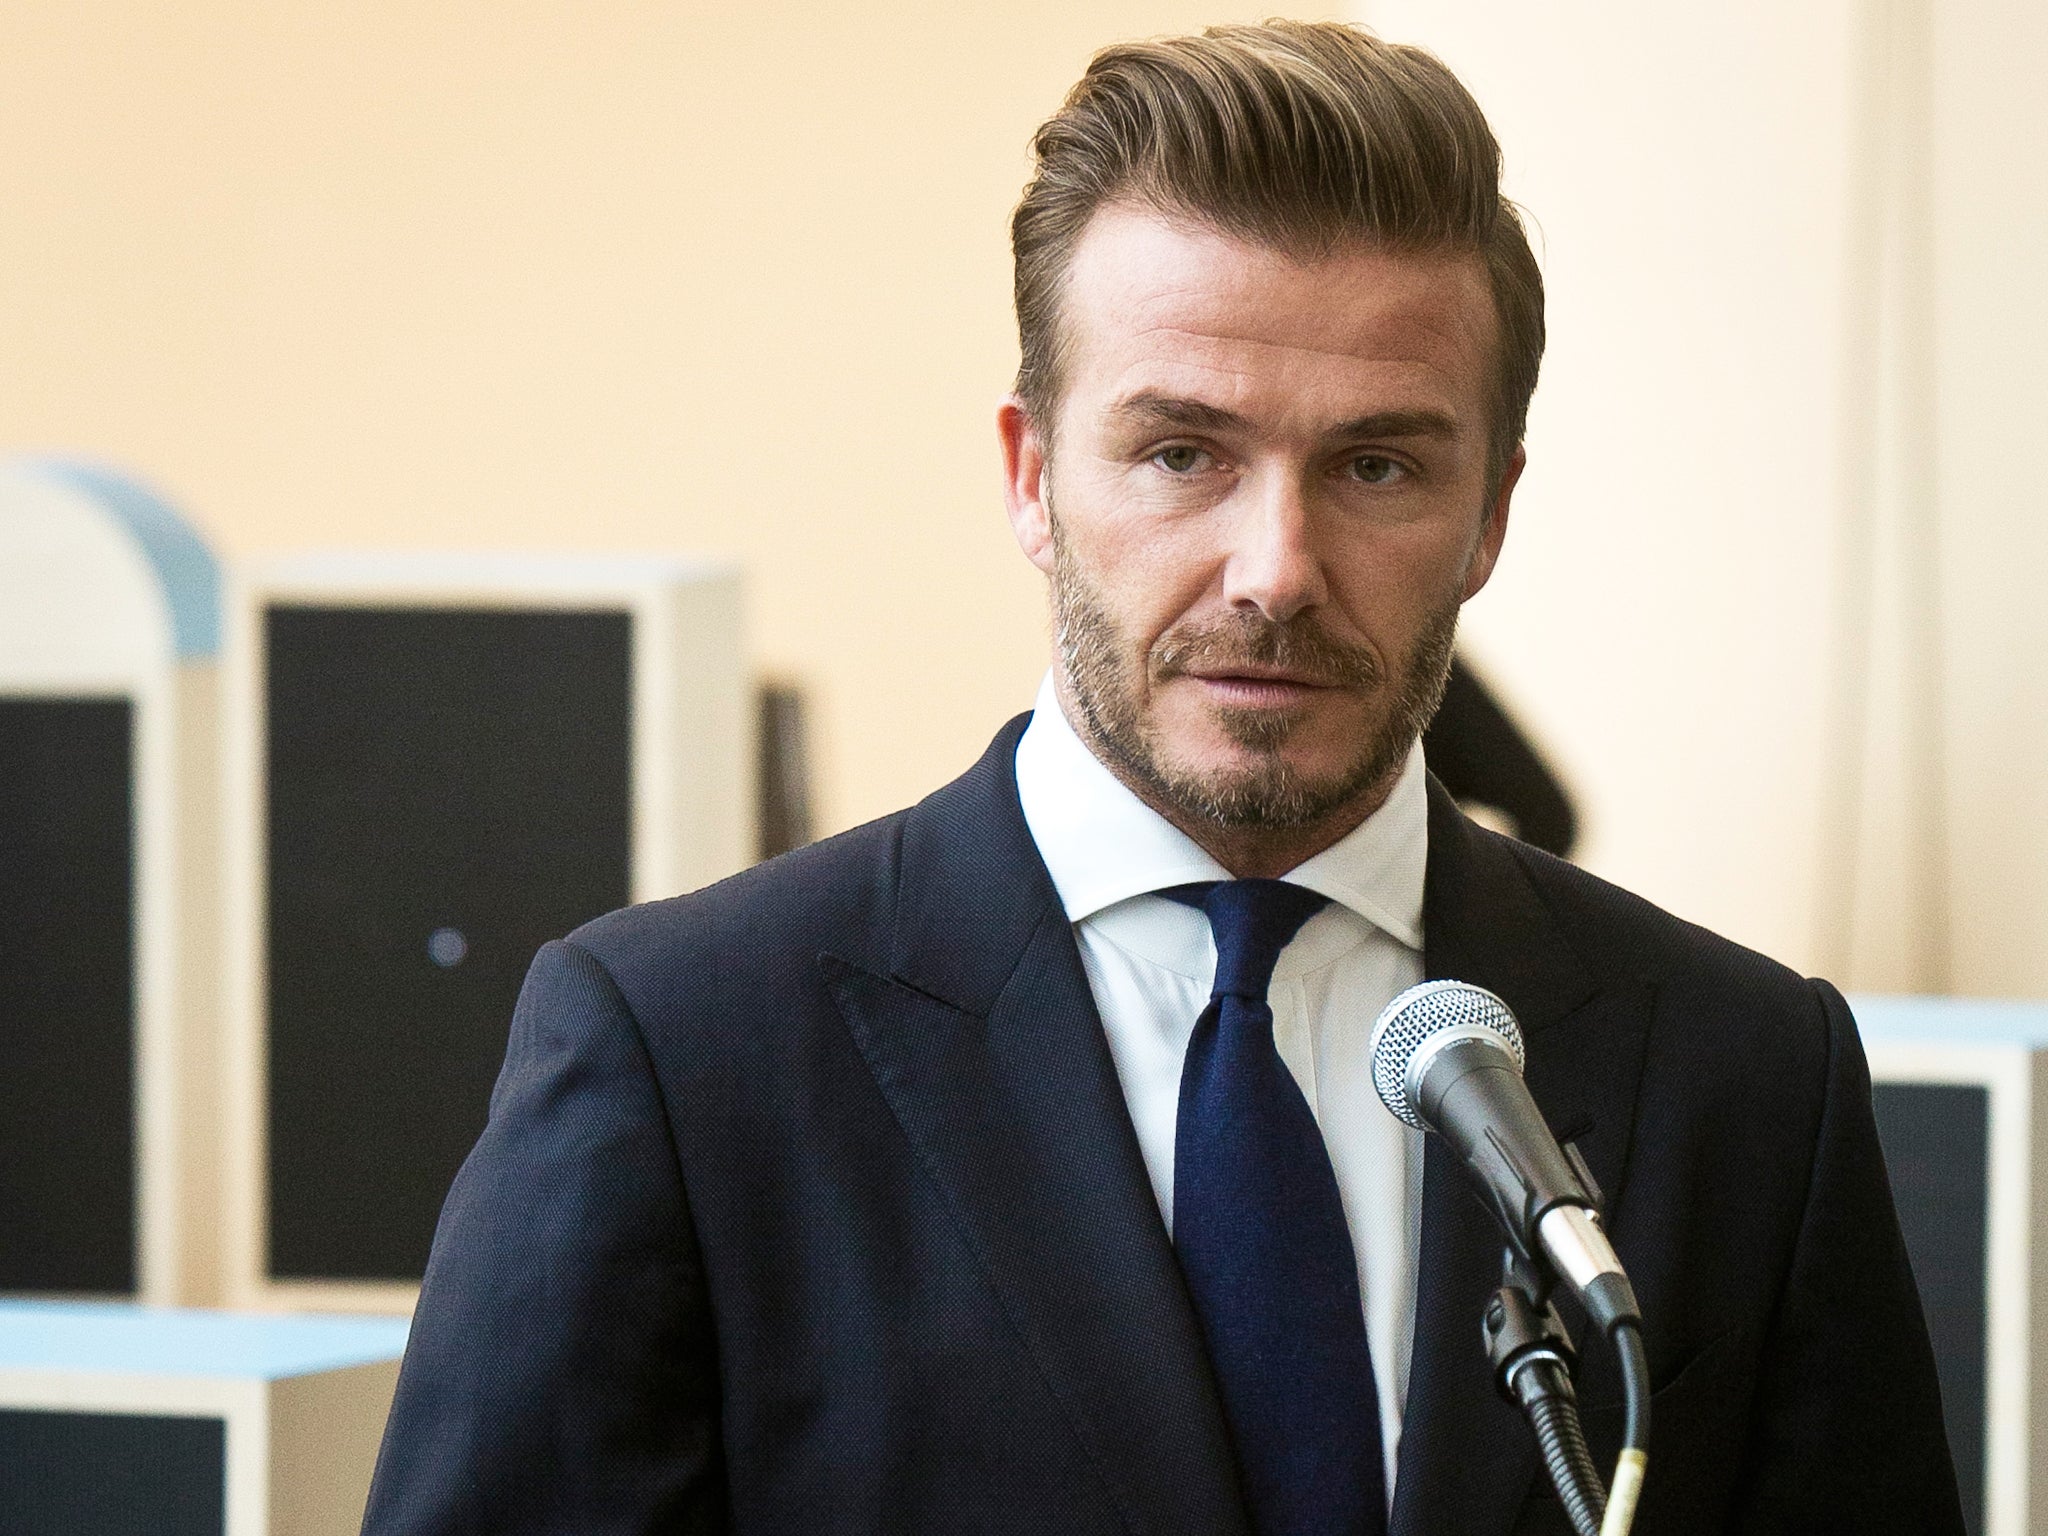 David Beckham is a Unicef goodwill ambassador